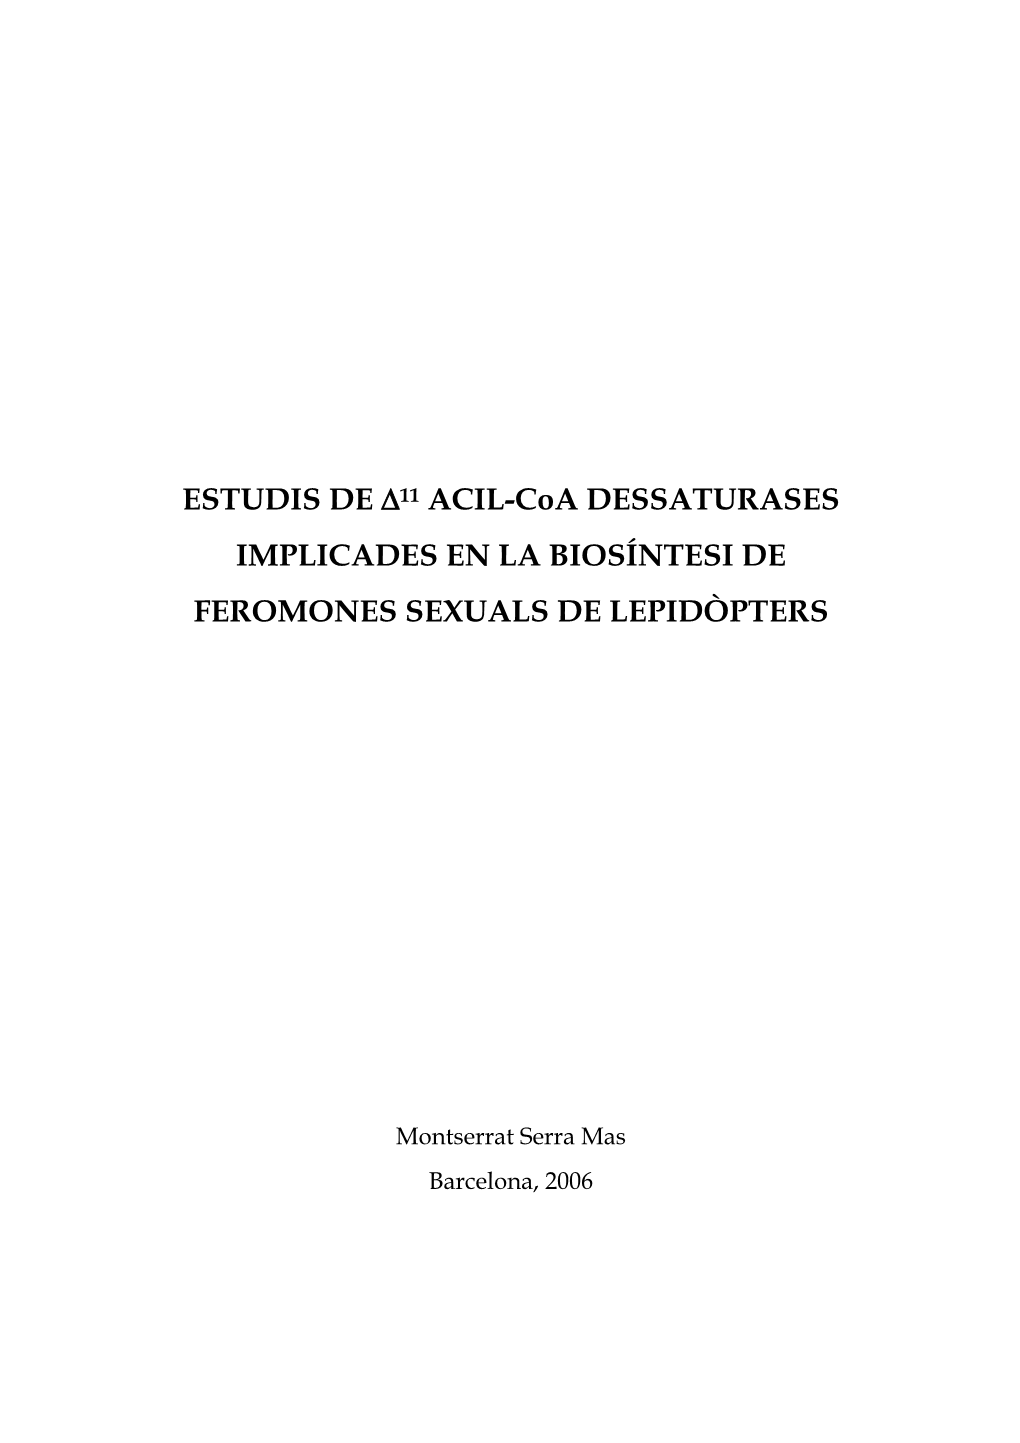 ESTUDIS DE A11 ACIL-Coa DESSATURASES IMPLICADES EN